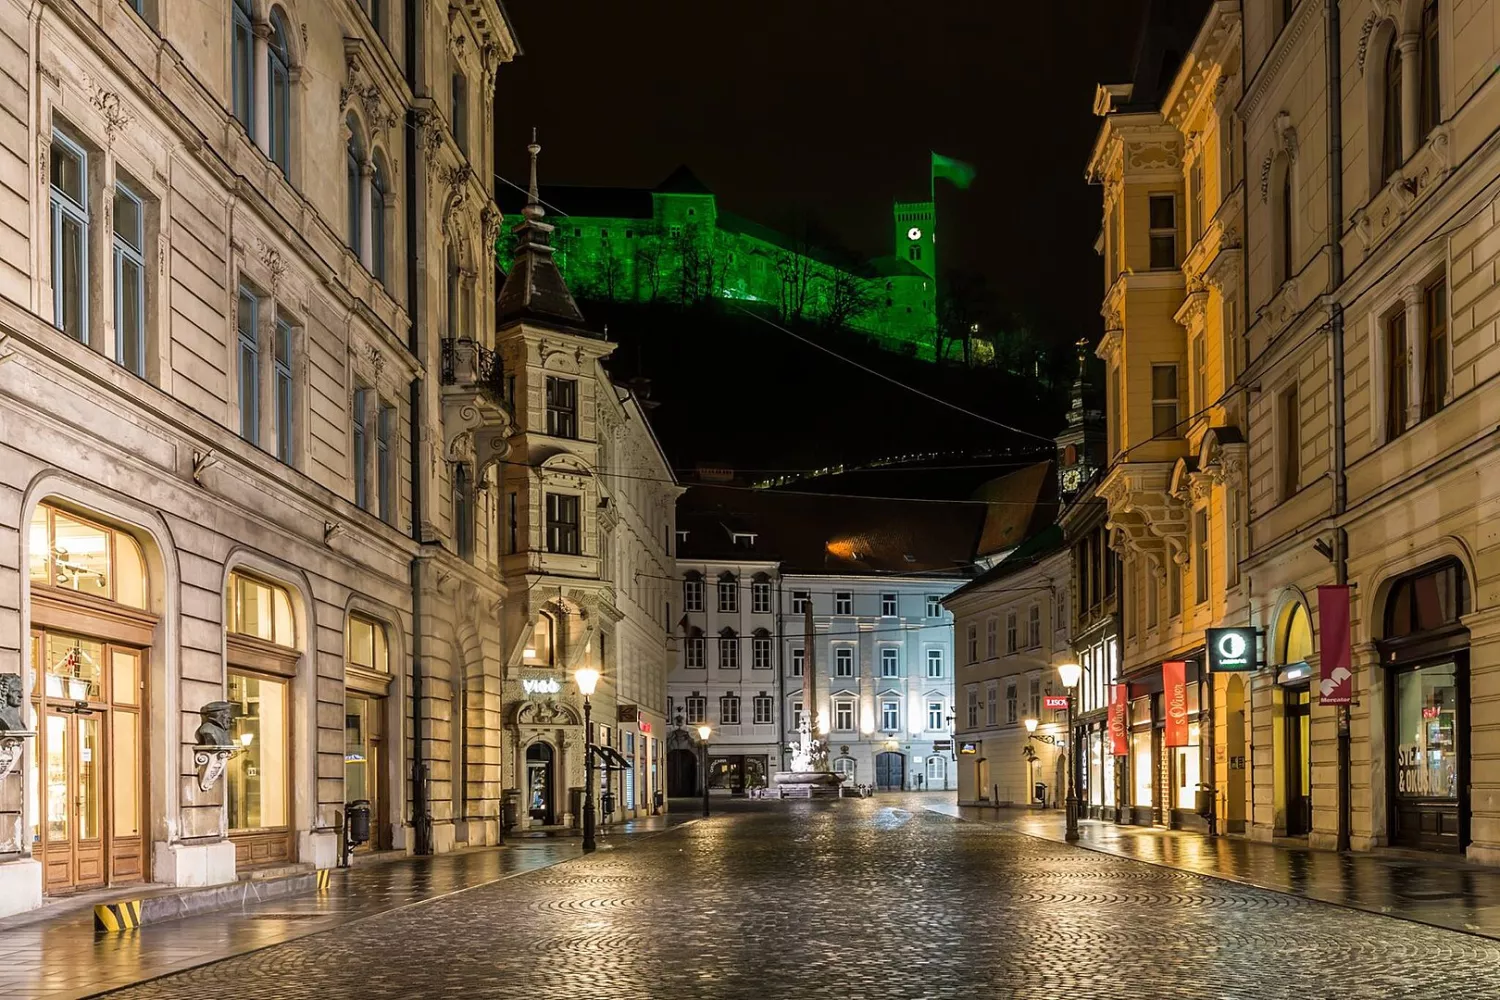 Stritarjeva ulica, Ljubljana - Slovenia